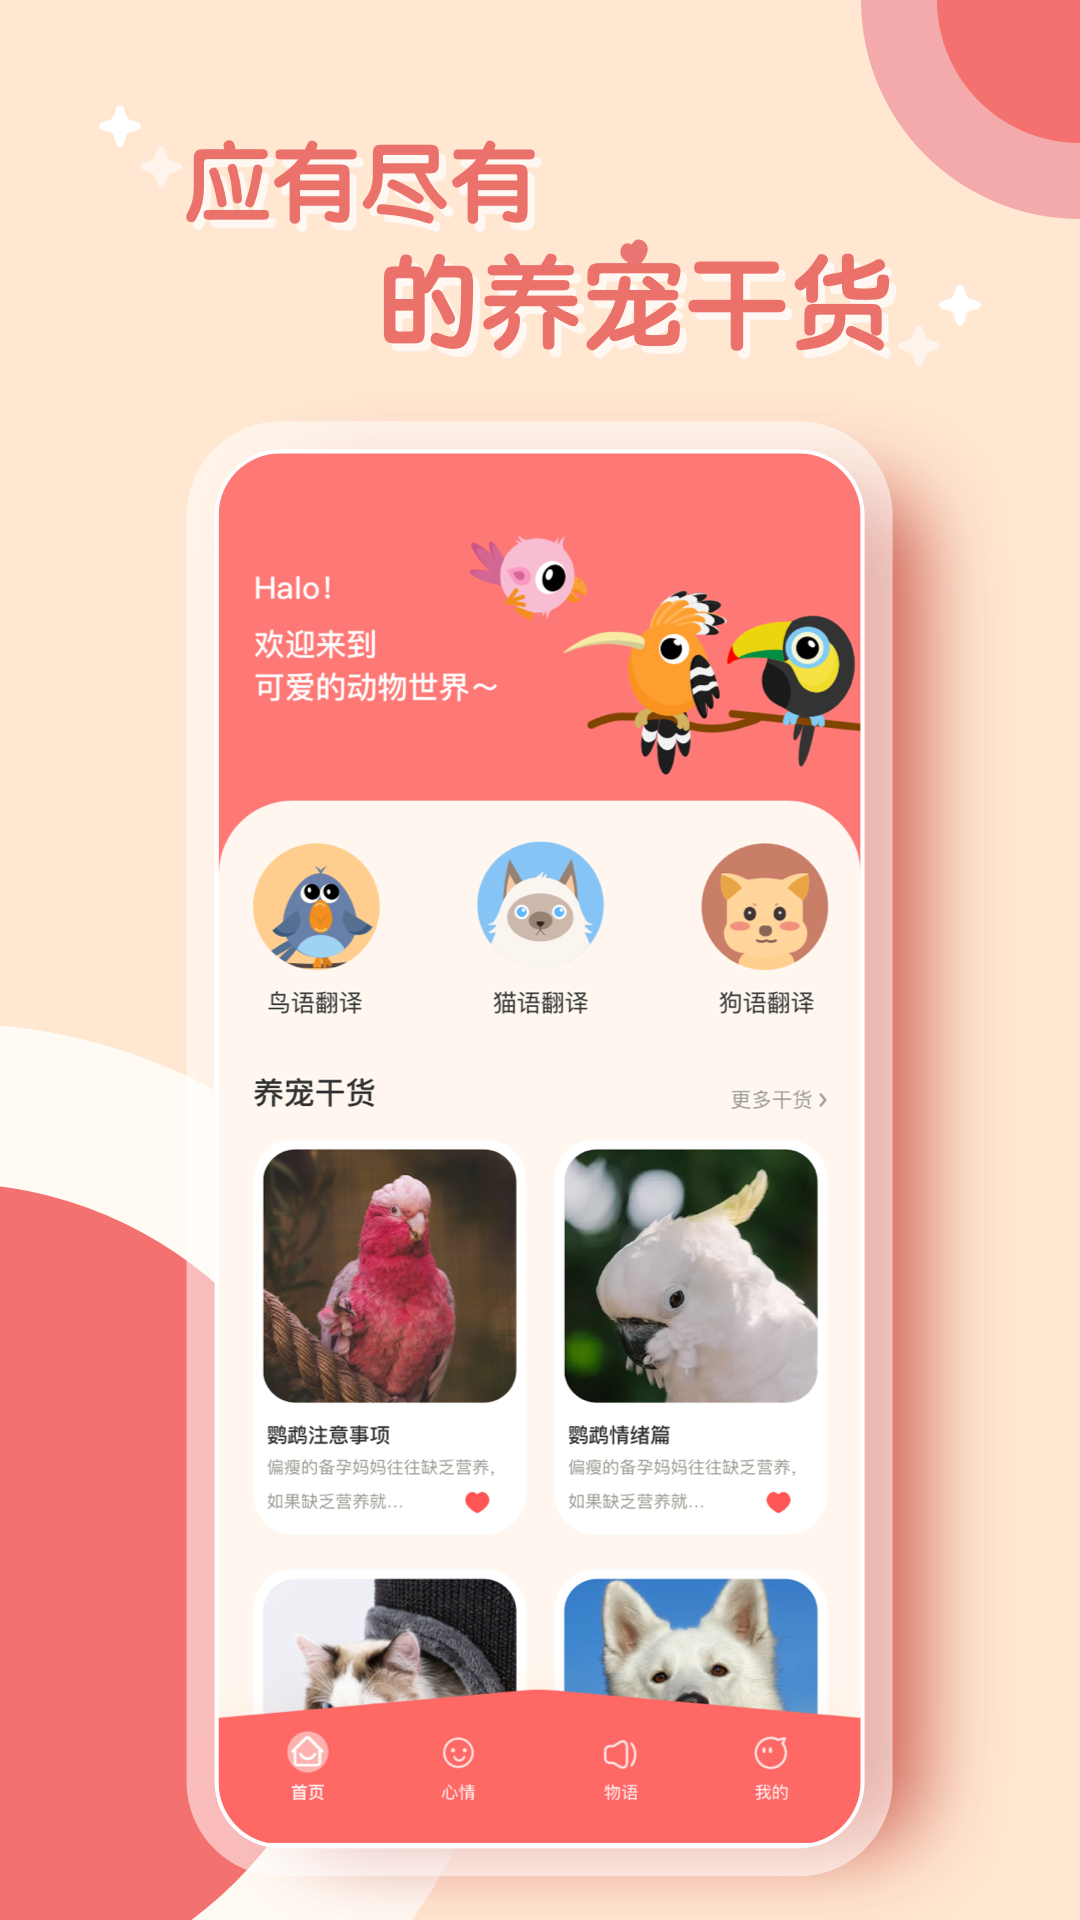 鹦鹉语言翻译器app